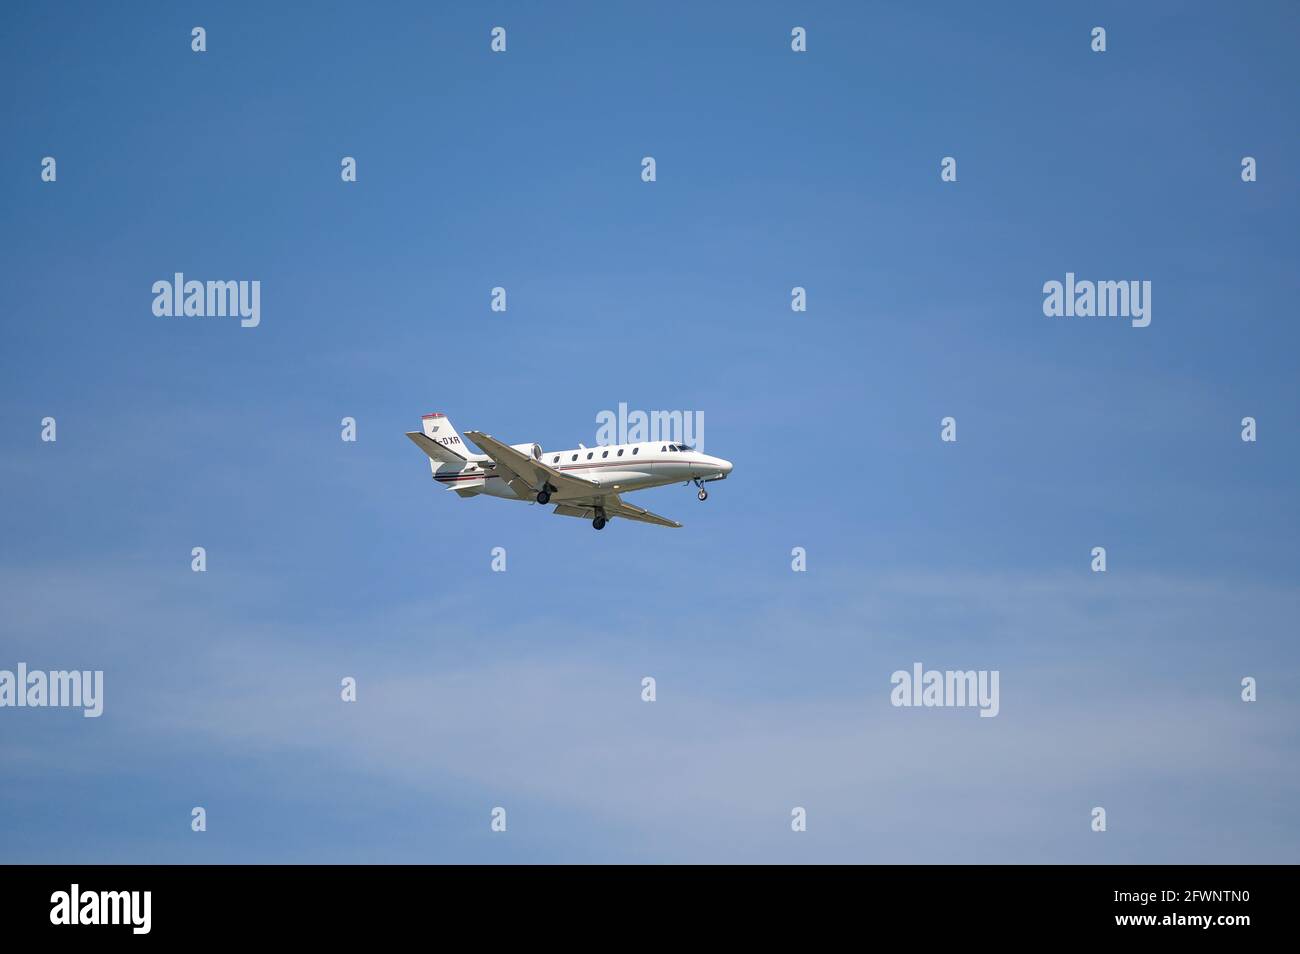 Monaco, Germania - 09. Maggio 2021 : NetJets Europe Cessna 560XLS Citation eccellono con la registrazione dell'aeromobile CS-DXR nell'avvicinamento alla corsa nord Foto Stock